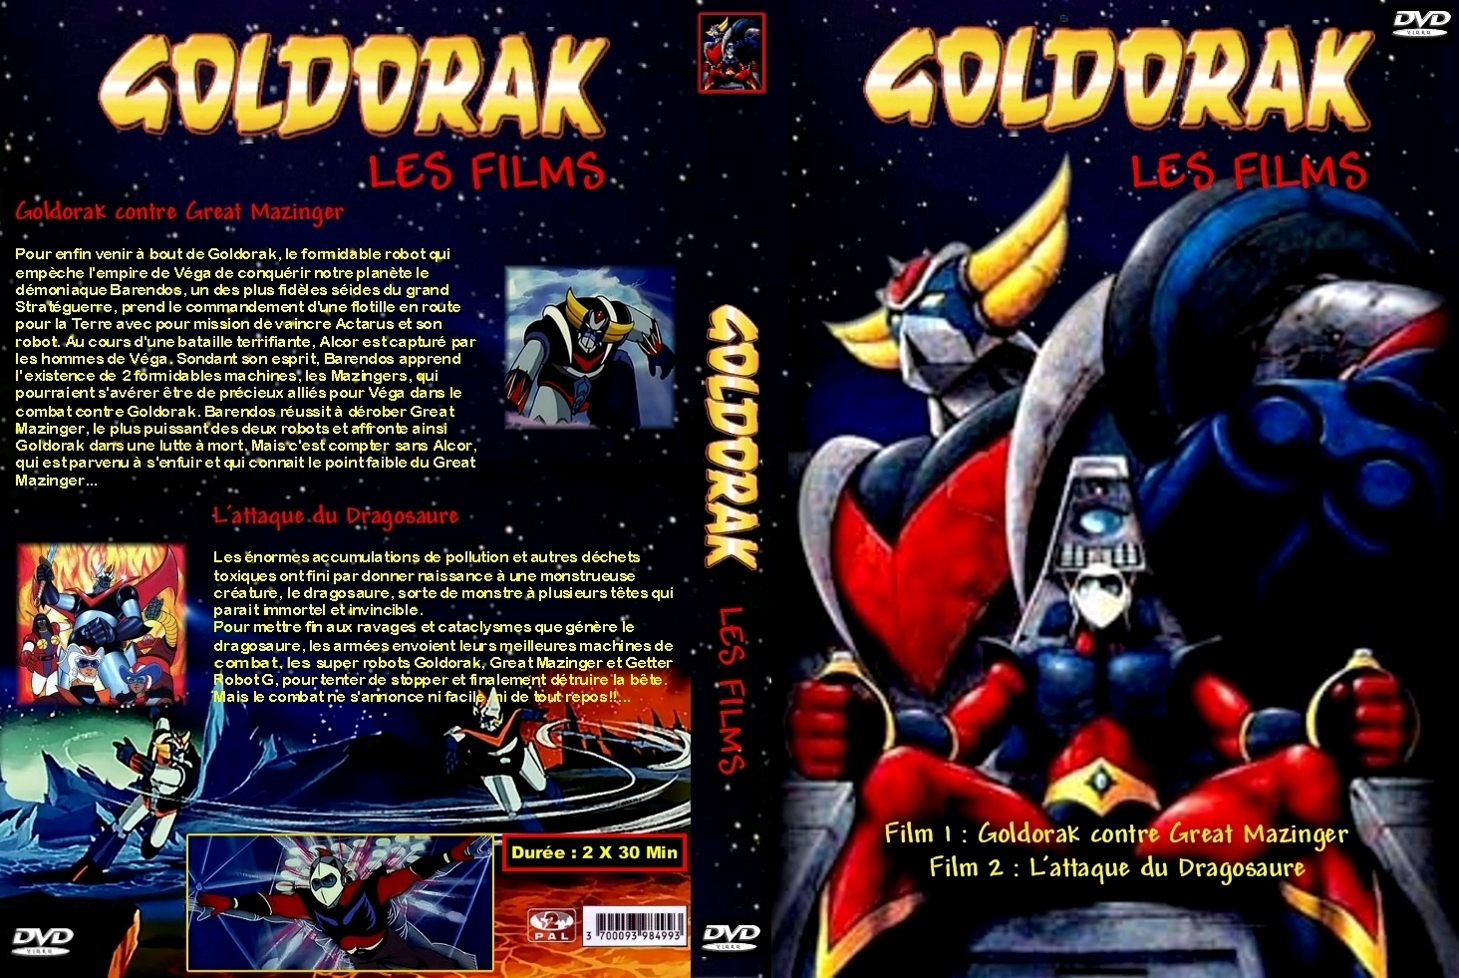 Jaquette DVD de Goldorak Box 3 - Cinéma Passion